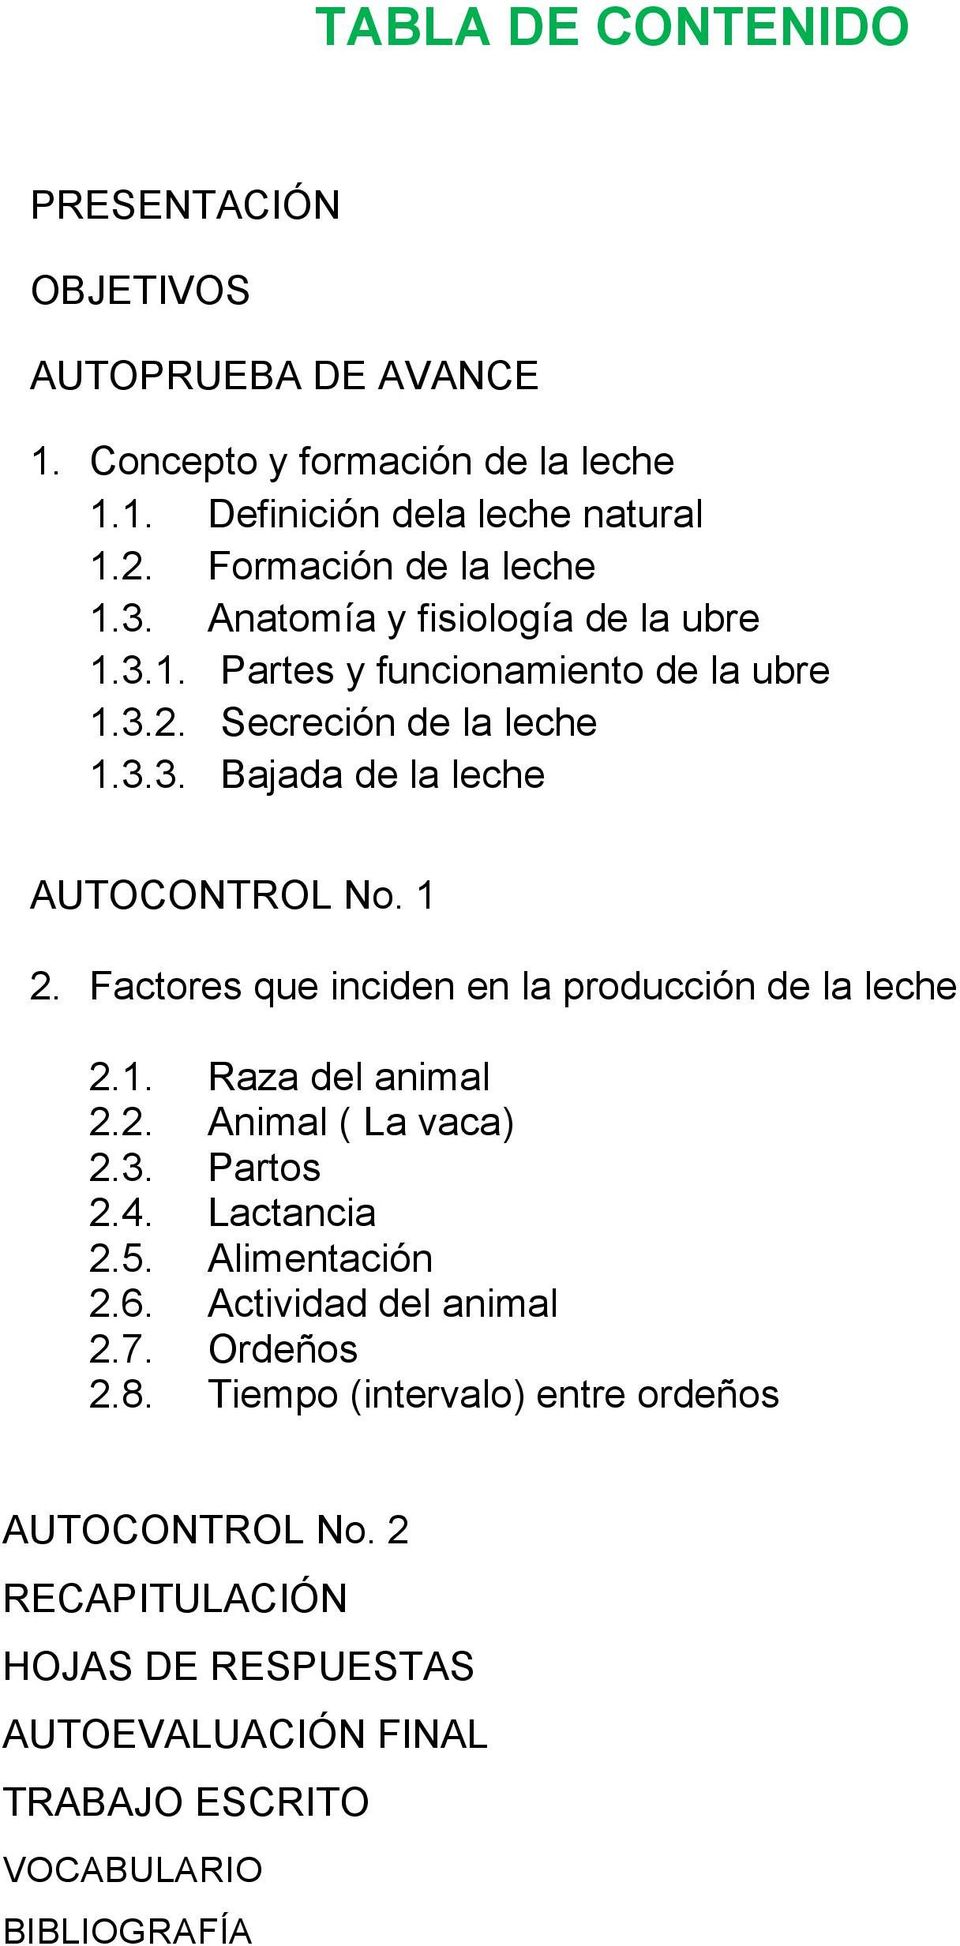 1 2. Factores que inciden en la producción de la leche 2.1. Raza del animal 2.2. Animal ( La vaca) 2.3. Partos 2.4. Lactancia 2.5. Alimentación 2.6.